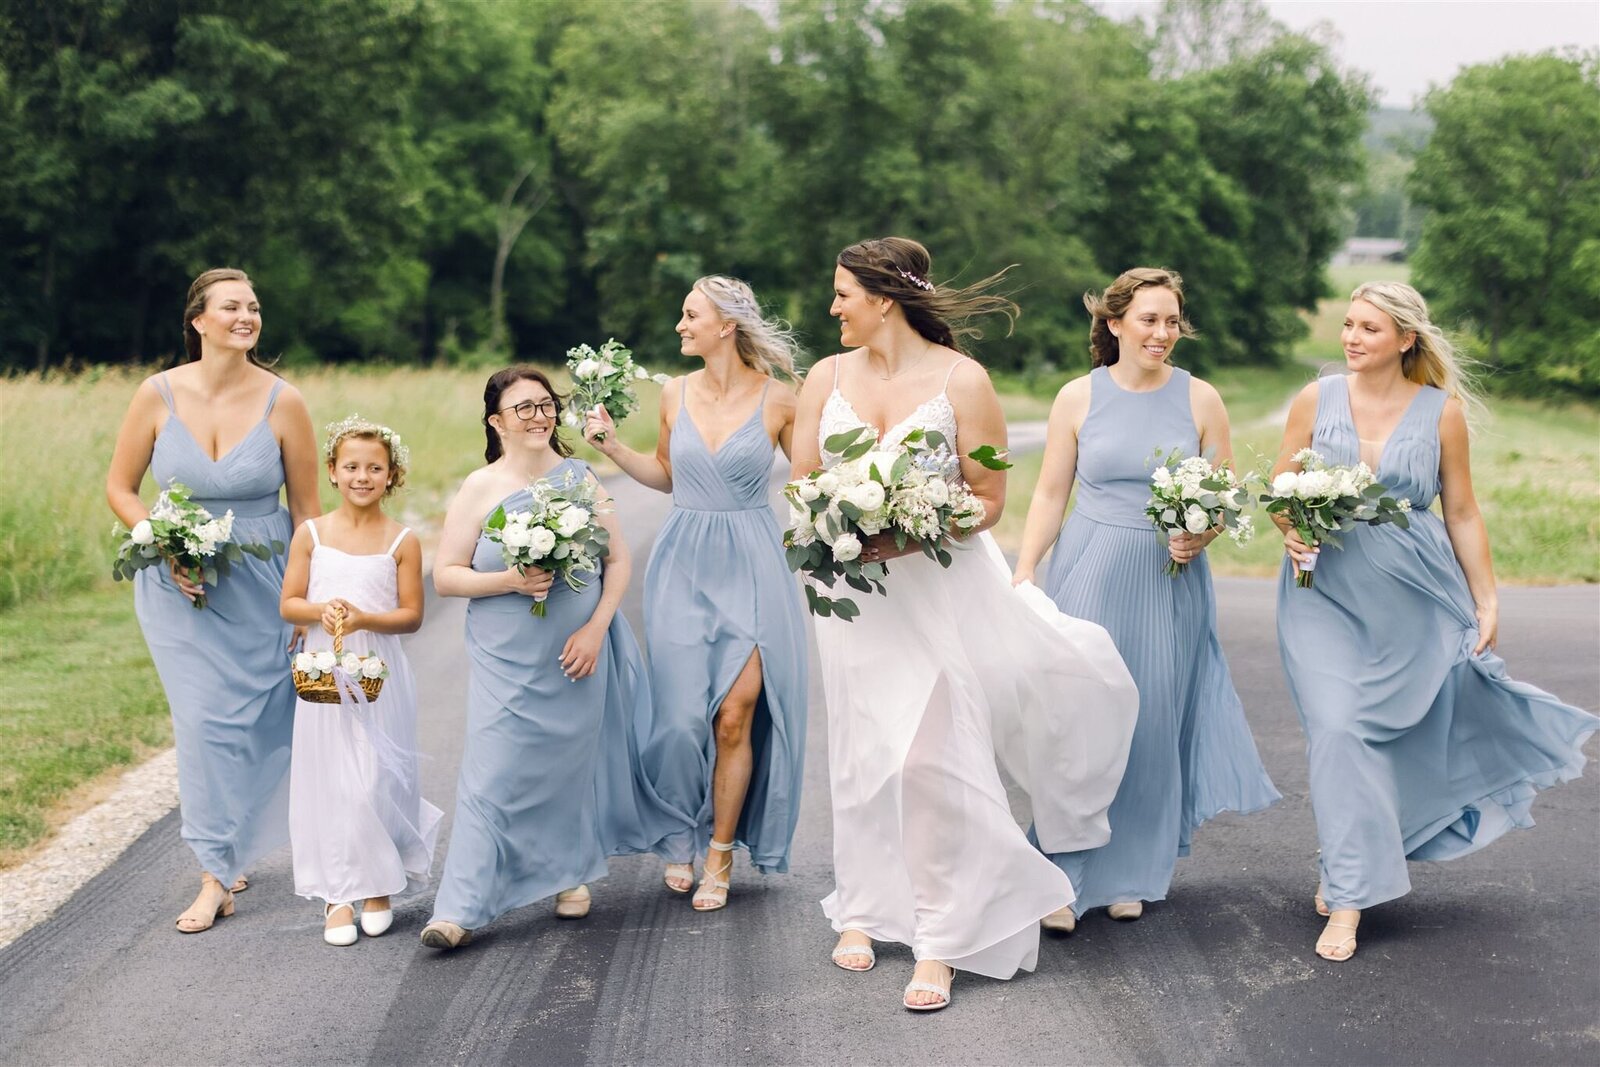 Chiffon style, dusty blue bridesmaids dresses